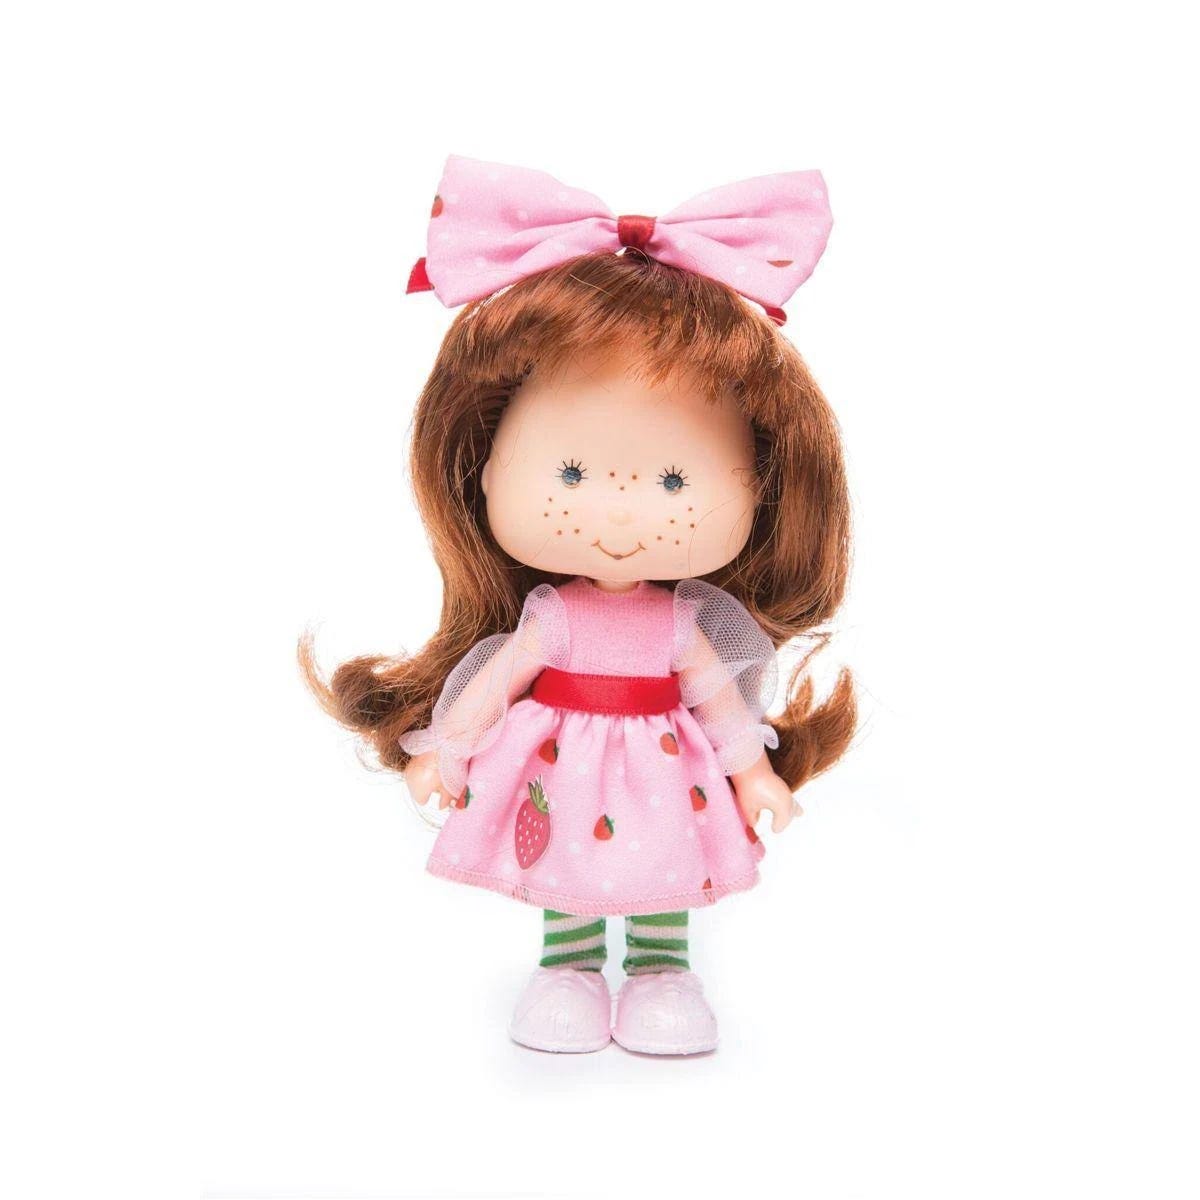 Estrela Strawberry Shortcake Collectible Doll | Image